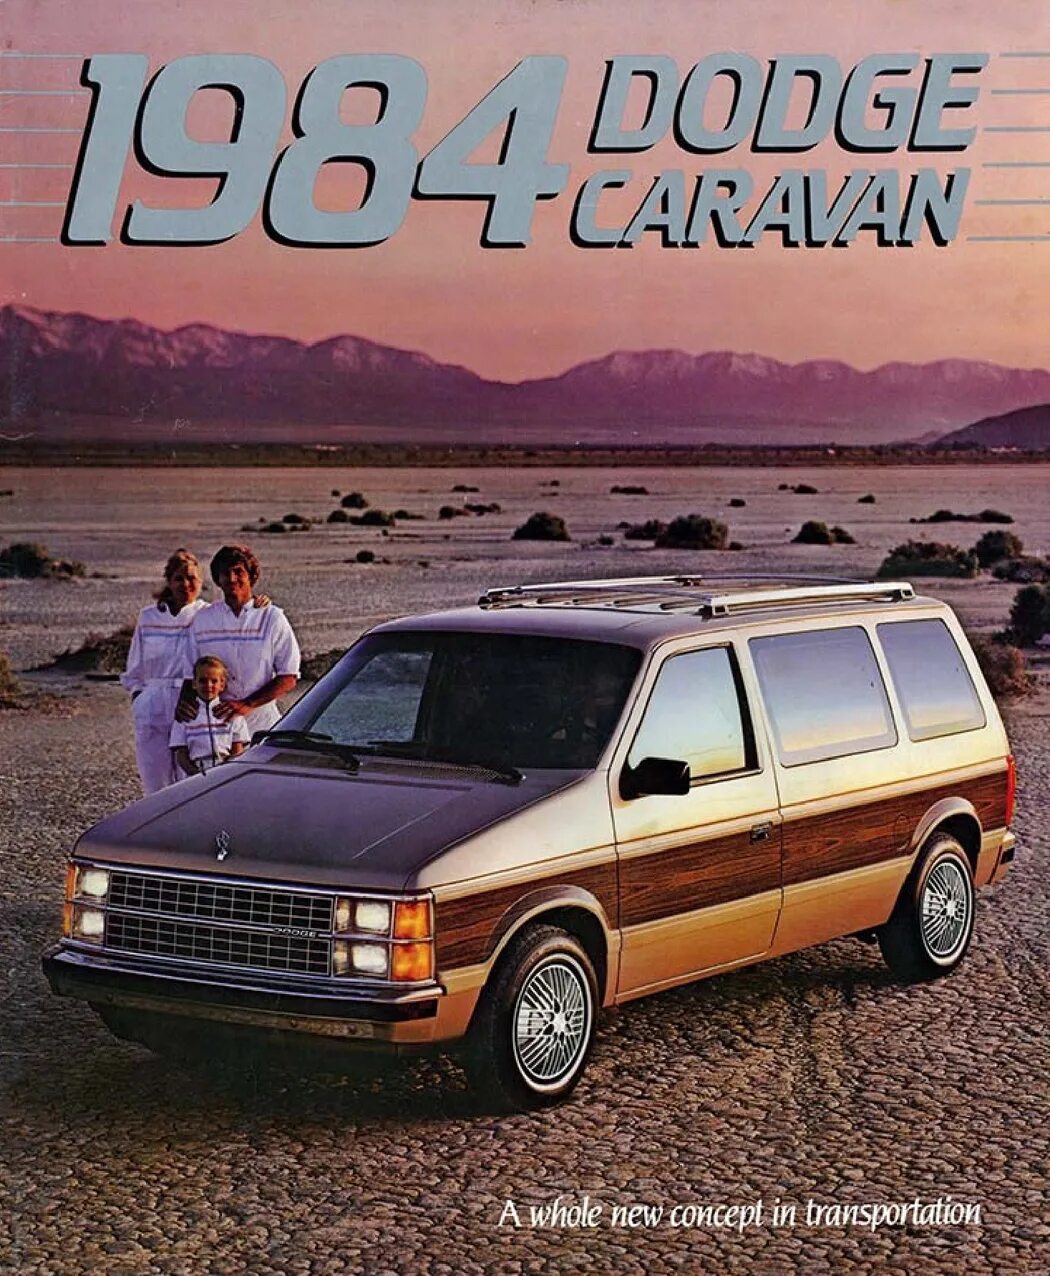 Караван 22. Dodge Caravan 1984. Додж Караван 1984. Dodge Caravan 1984 модель. Dodge Caravan 1987.